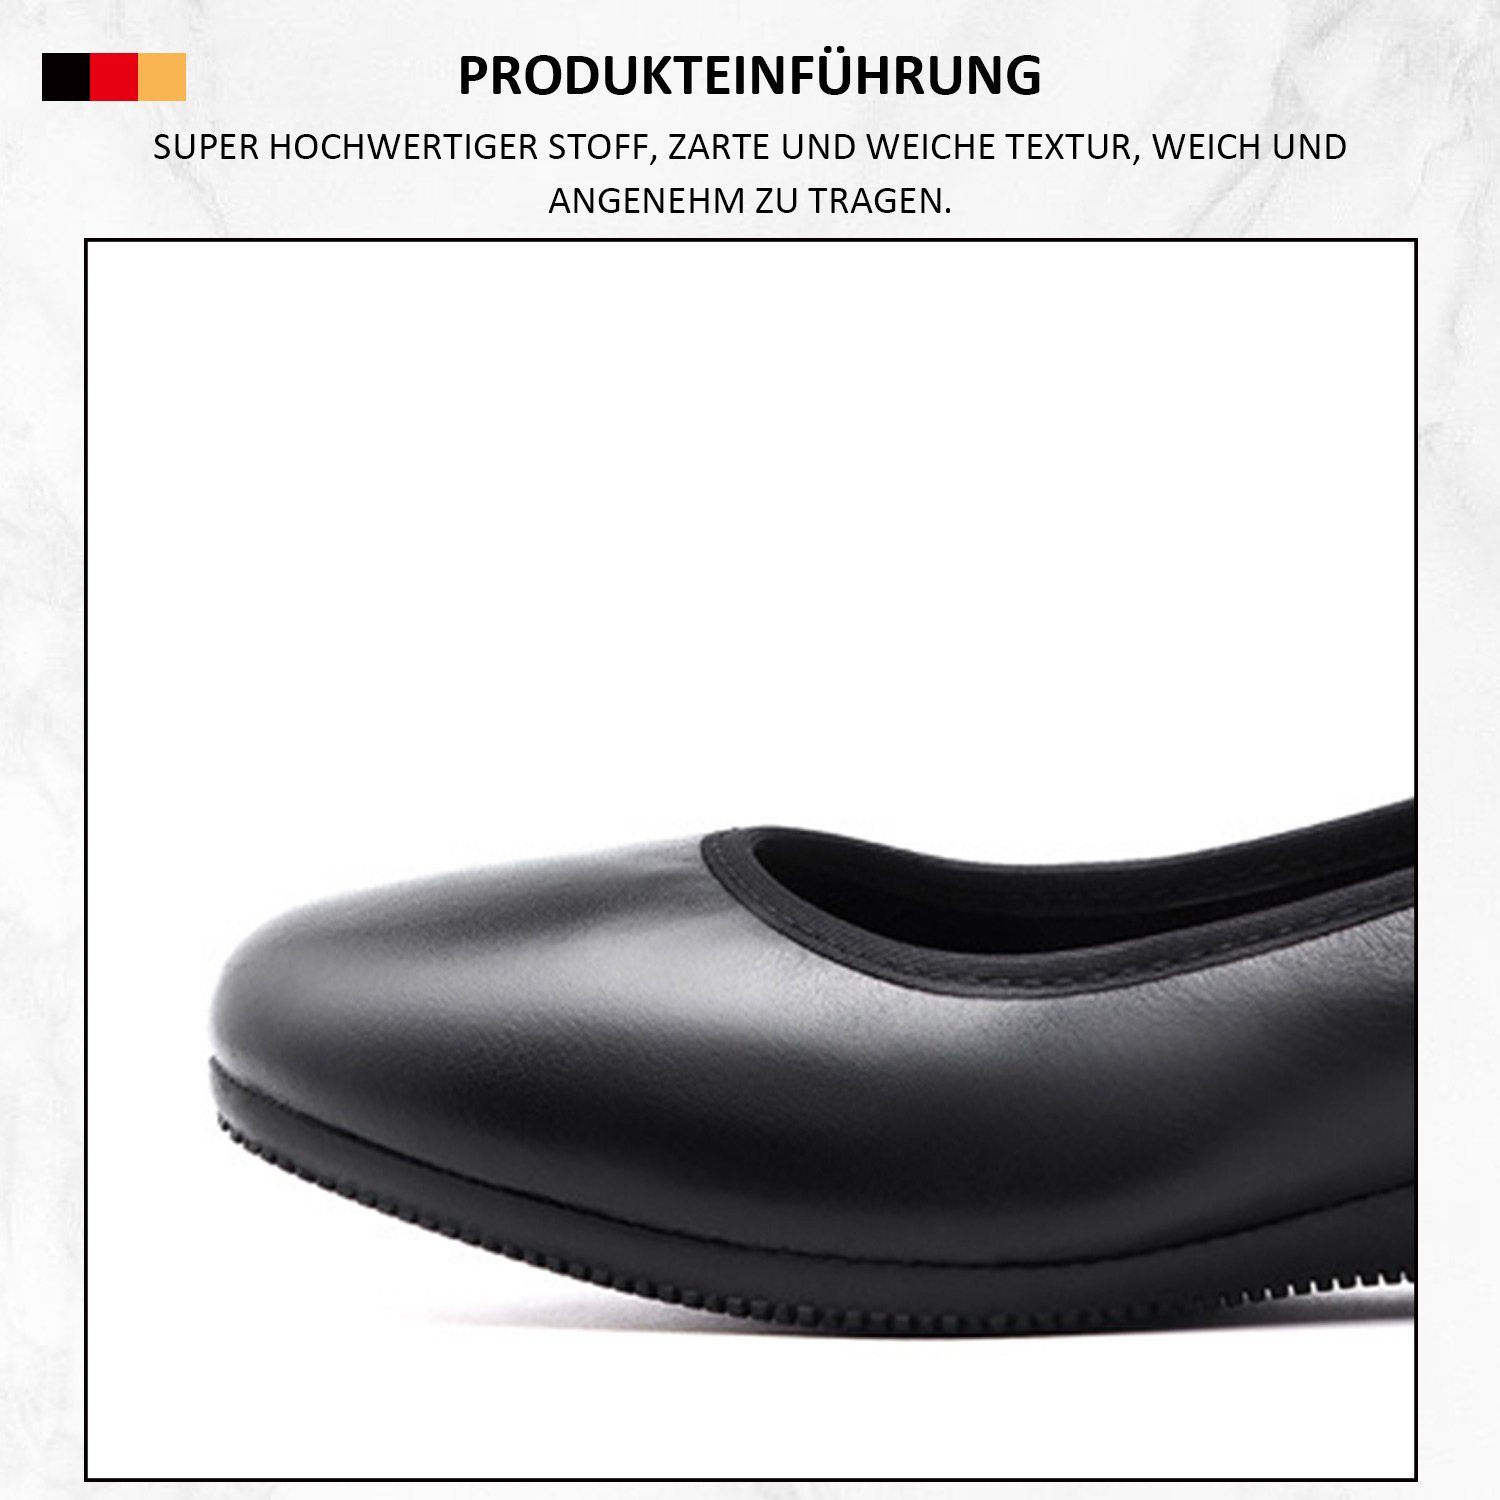 Bequeme geschlossener Schwarz runder Schuhe klassischer Zehenpartie Pumps MAGICSHE Frauen in formelle Linie mit Pumps